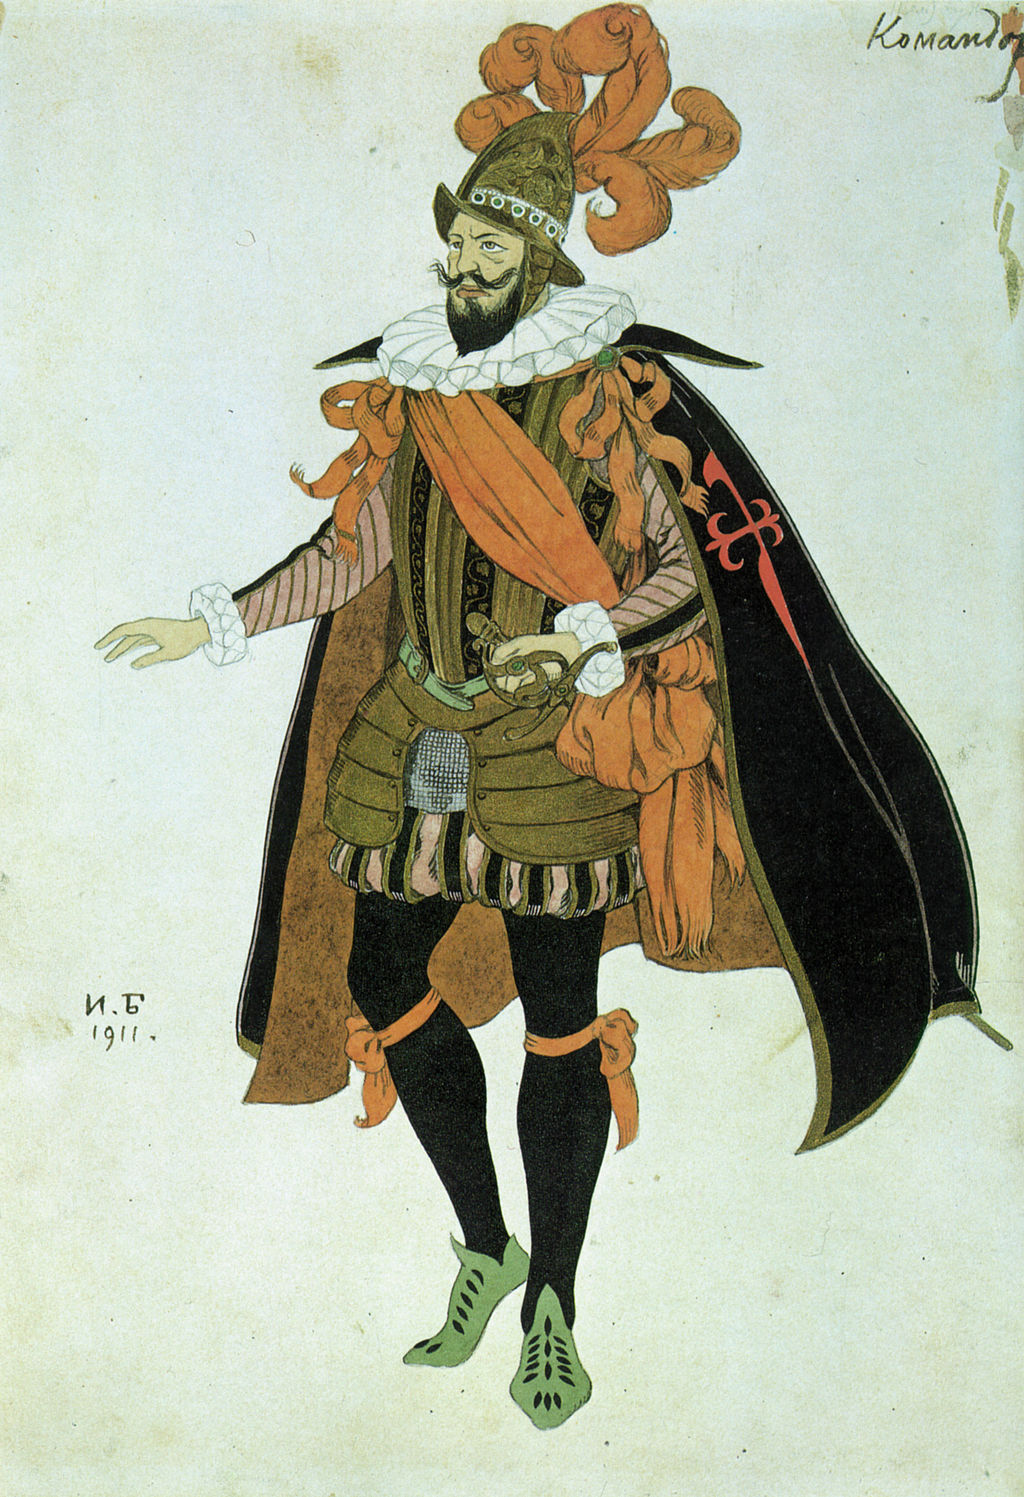 Dibujo de un personaje de comedias del siglo XVII